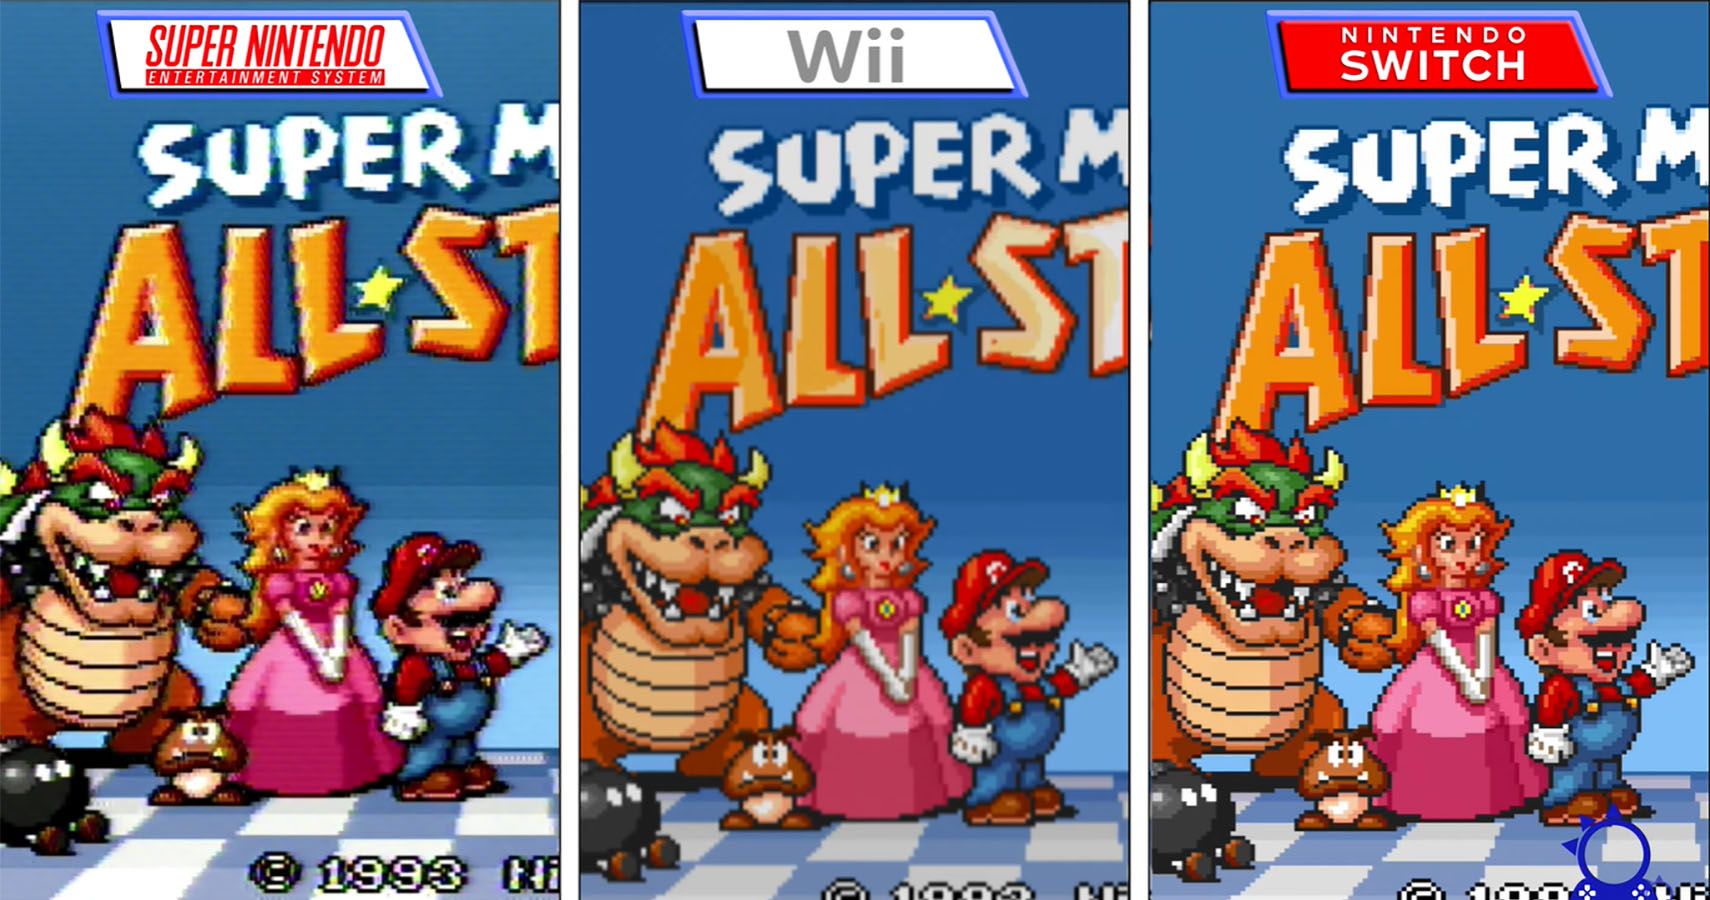 Super Mario All Stars run on three different consoles for comparison.